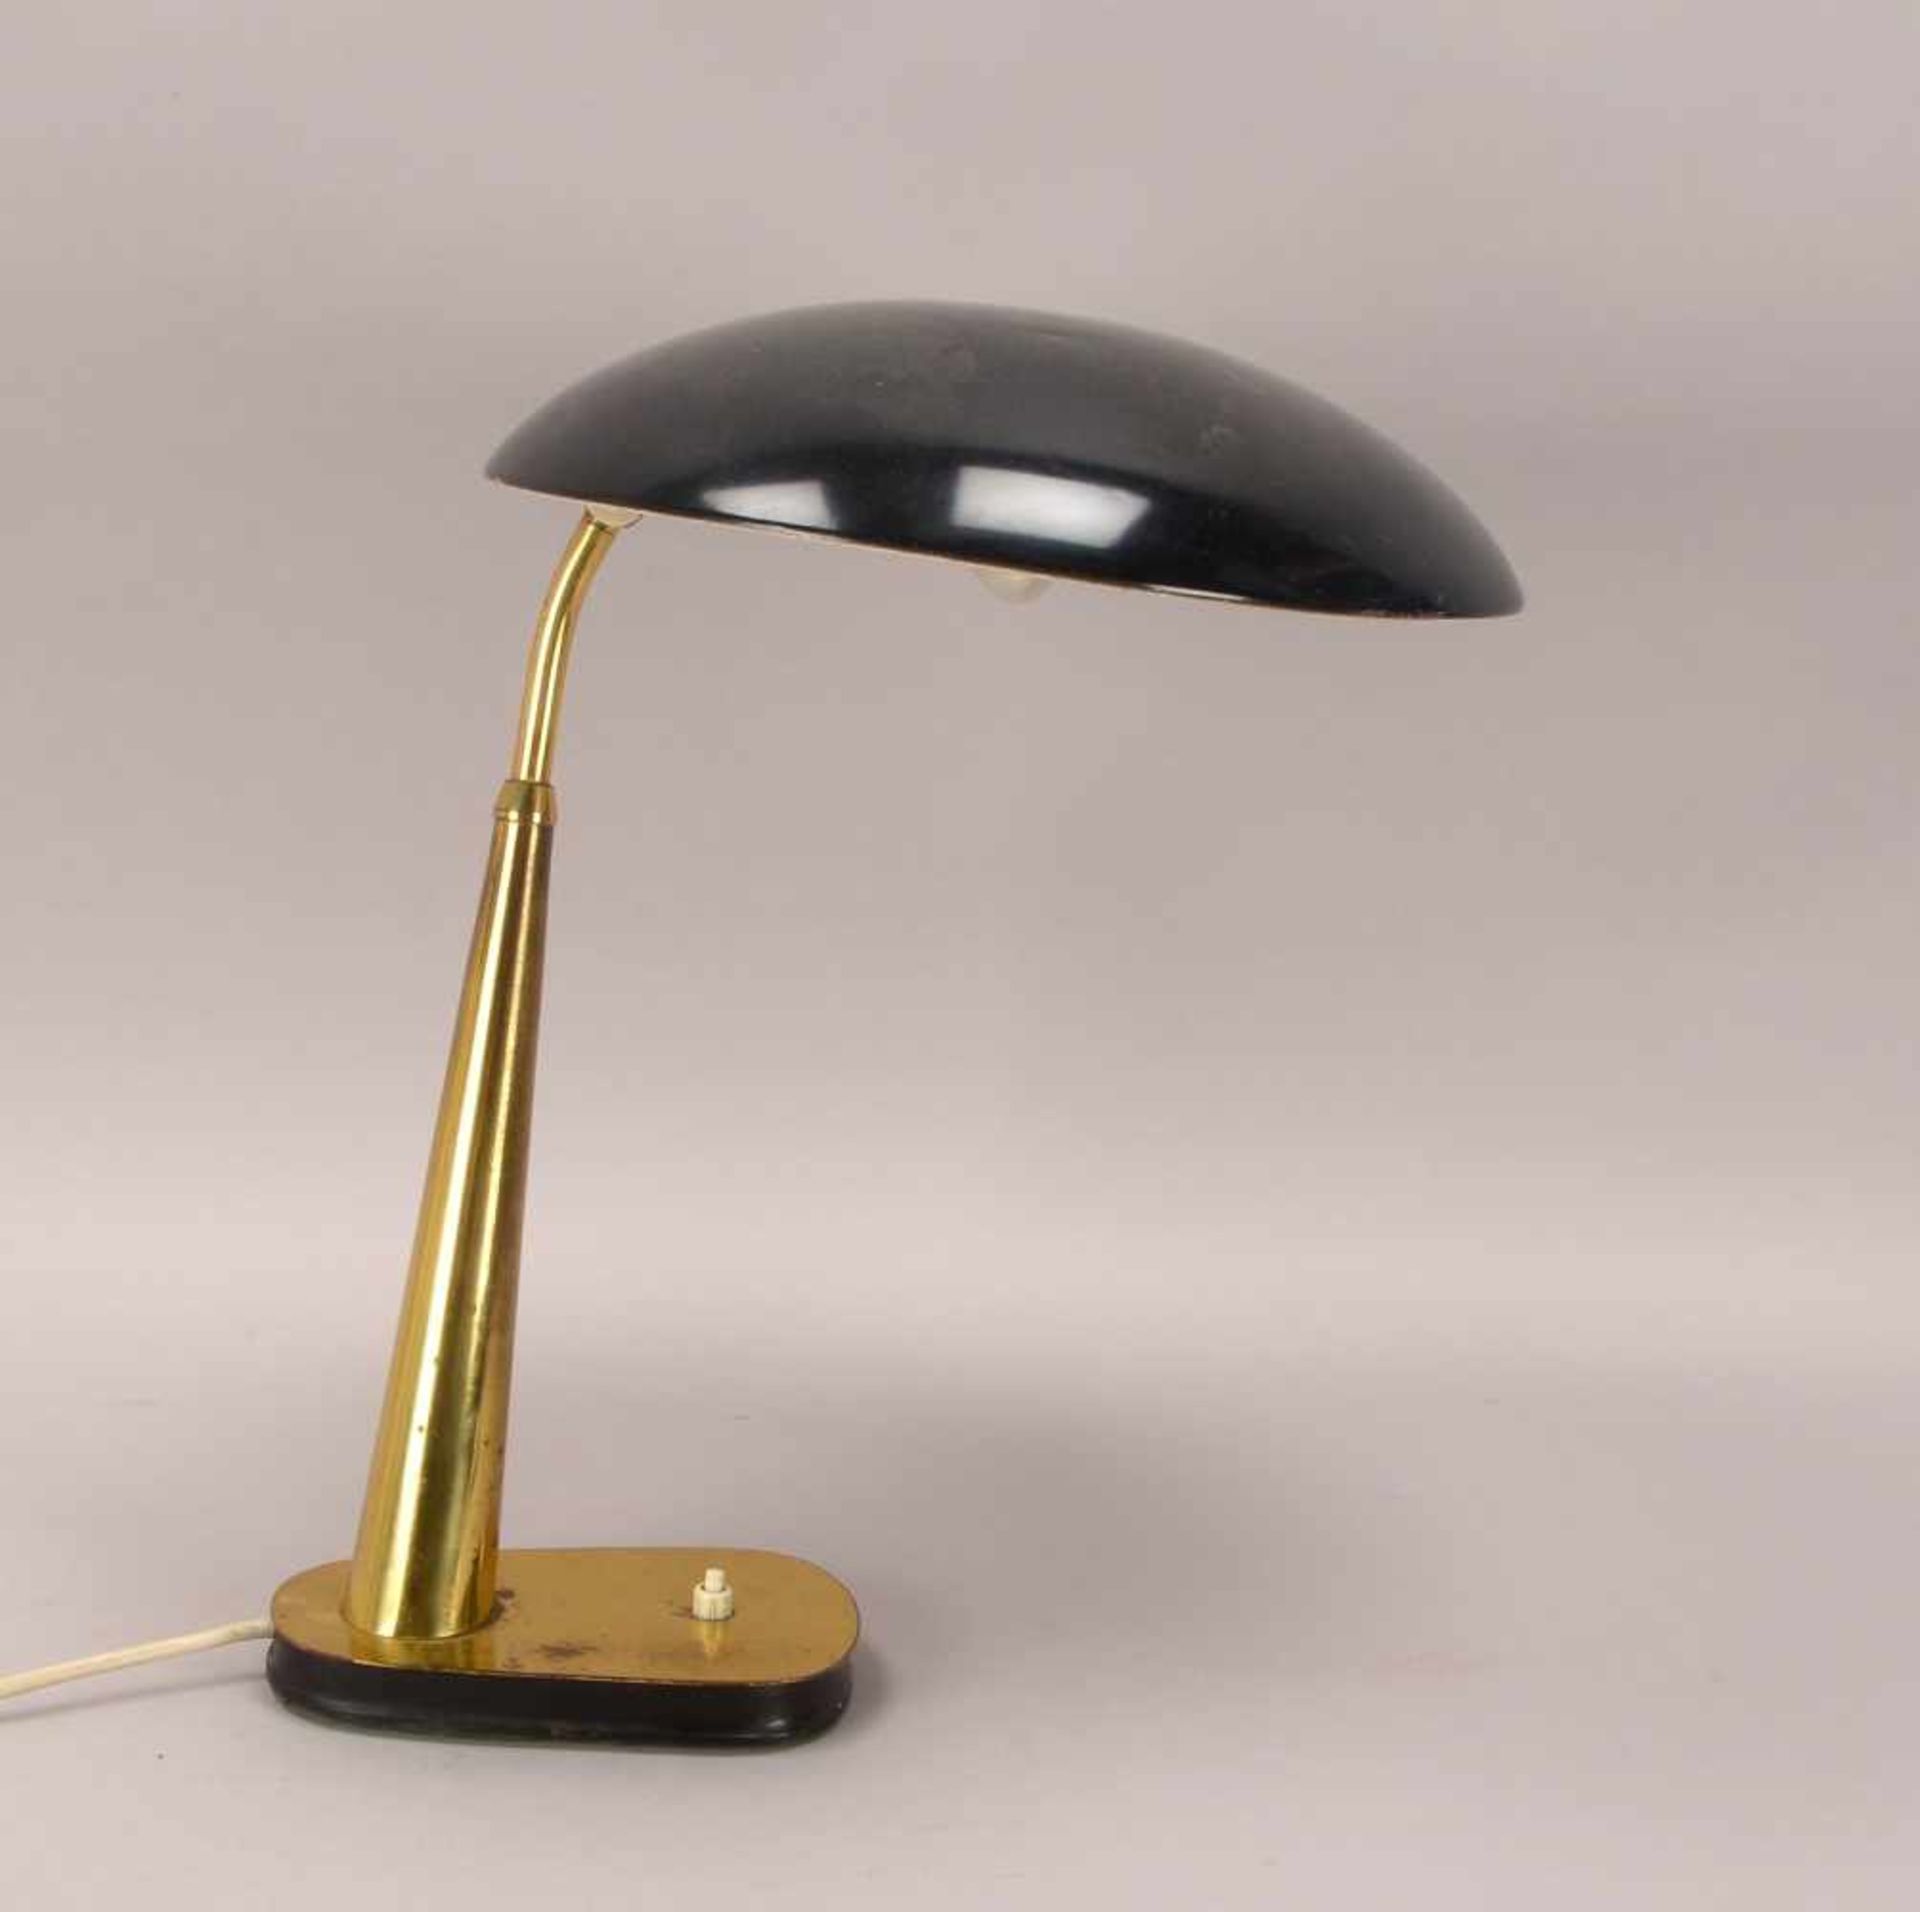 Tischlampe/Schreibtischlampe (1930er Jahre), schöne Art déco-Form, schwarz lackierter Schirm/